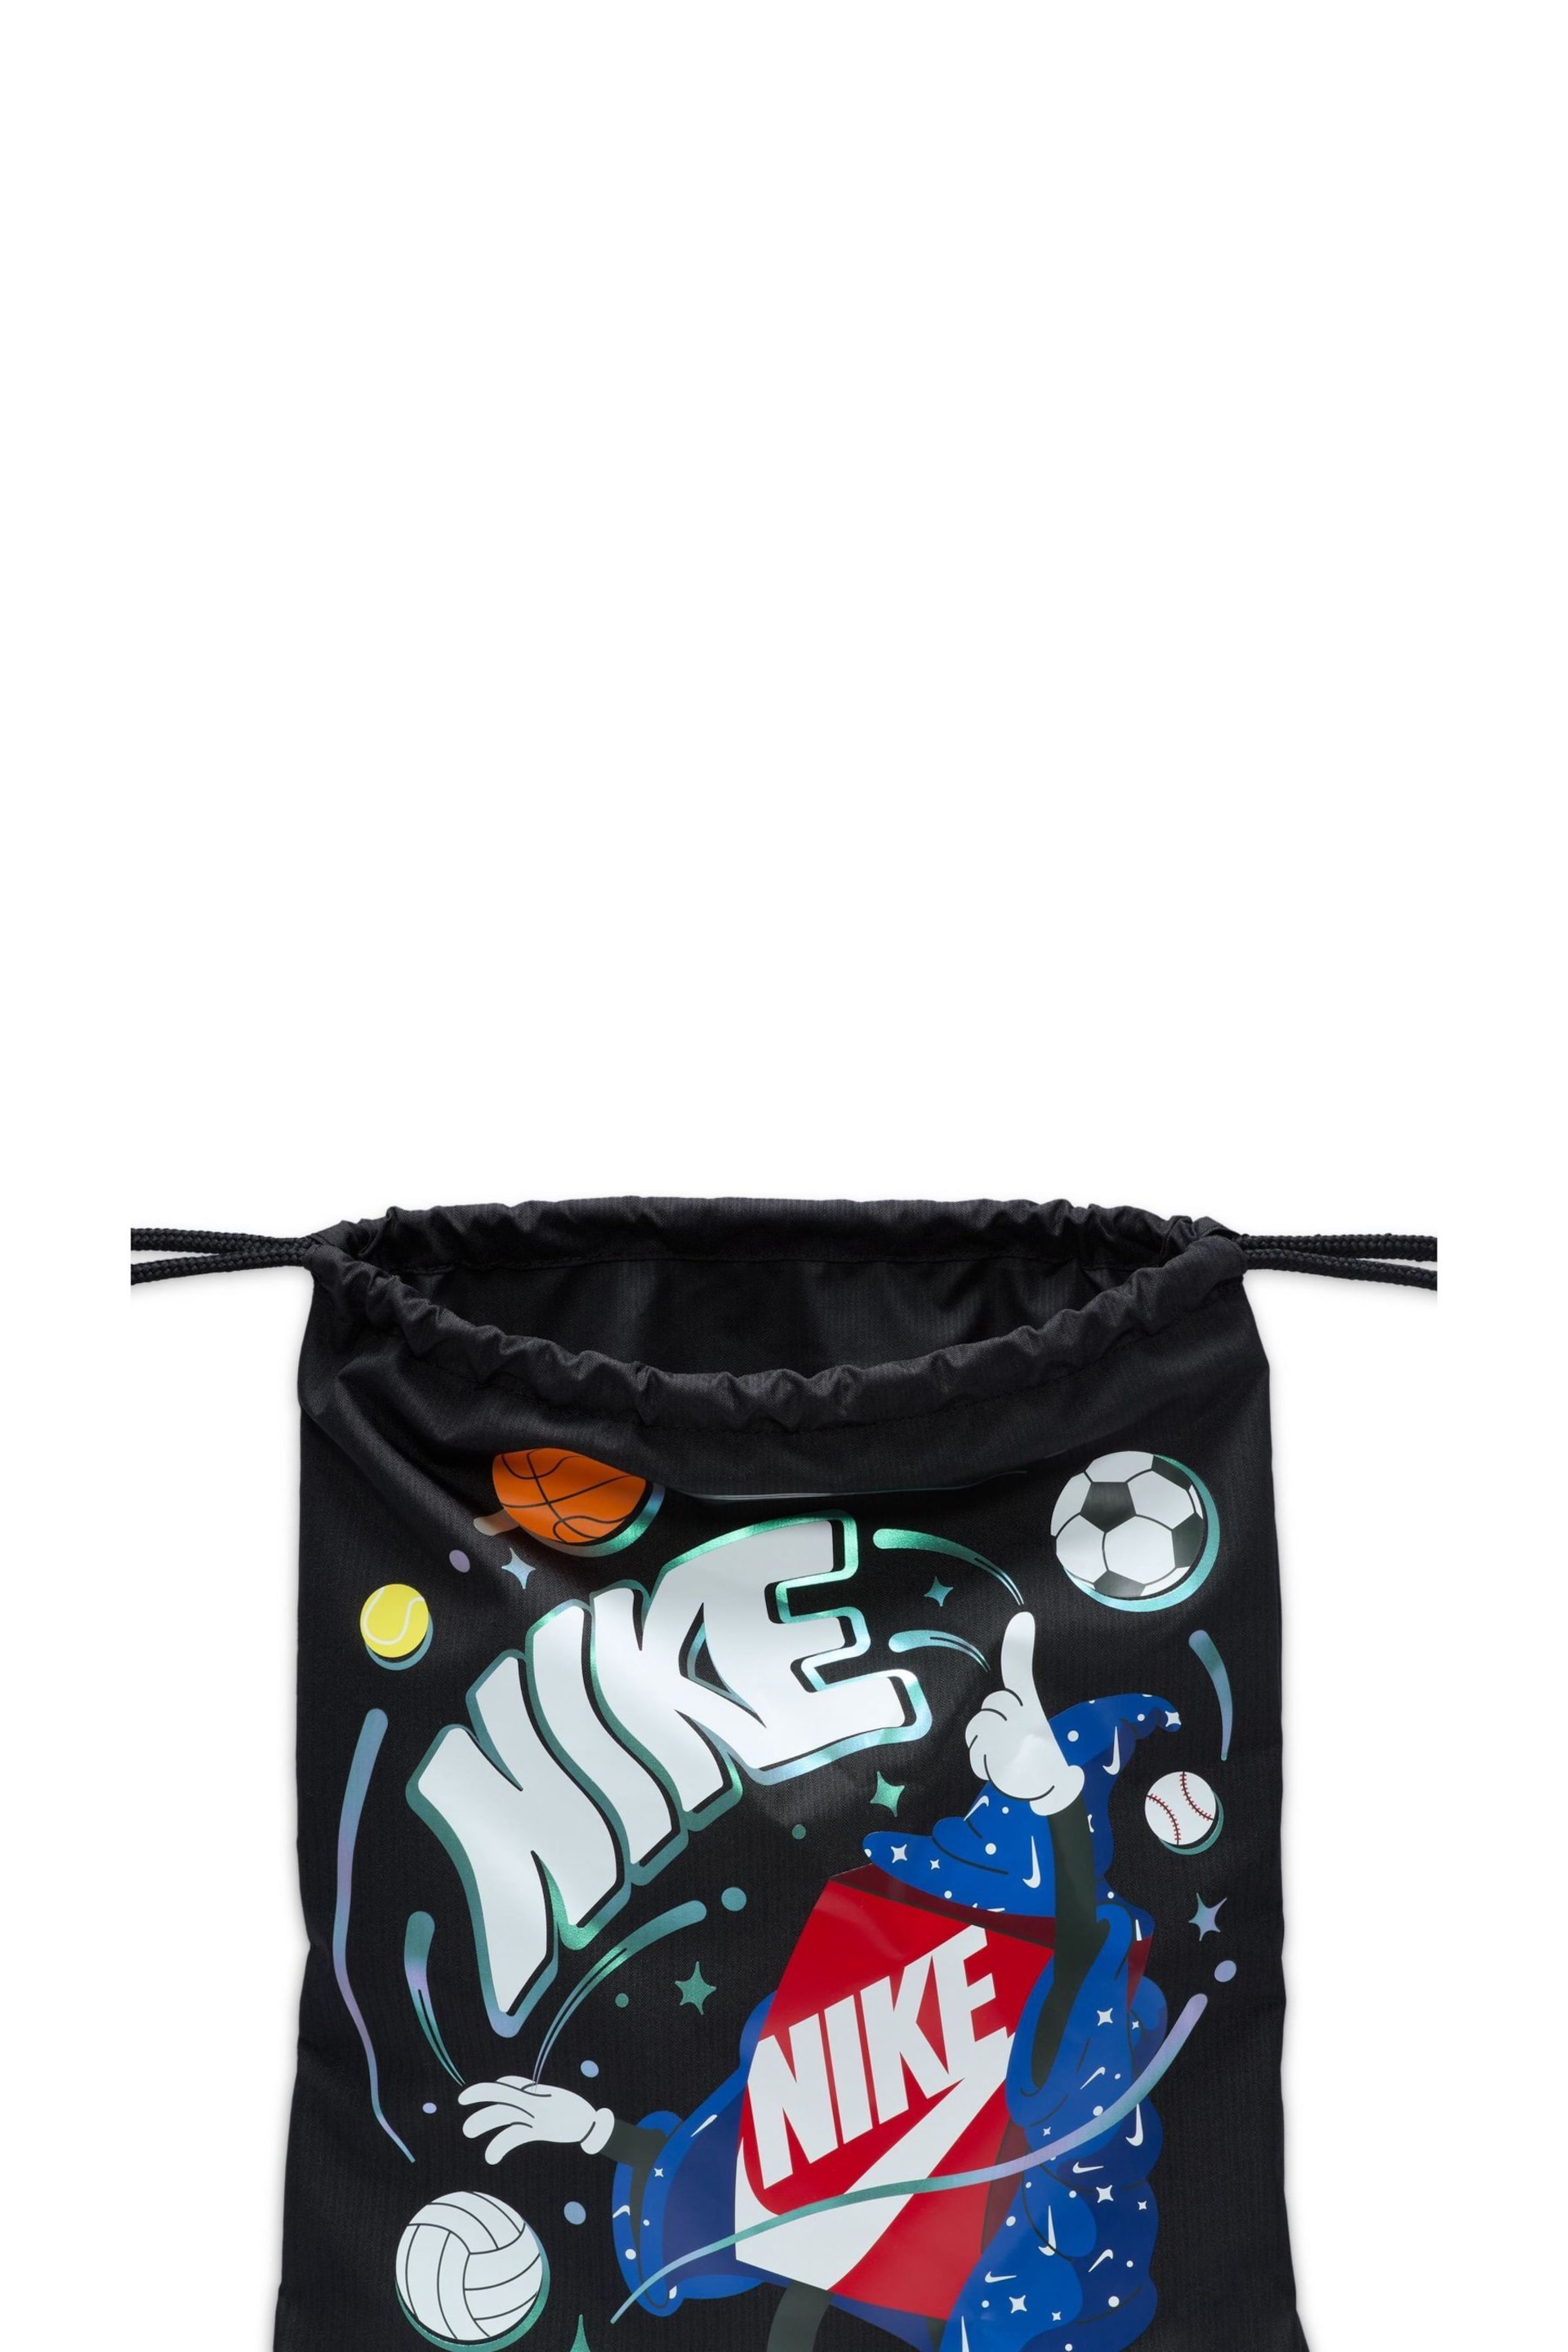 Nike Black Kids Drawstring Bag 12L - Image 5 of 7